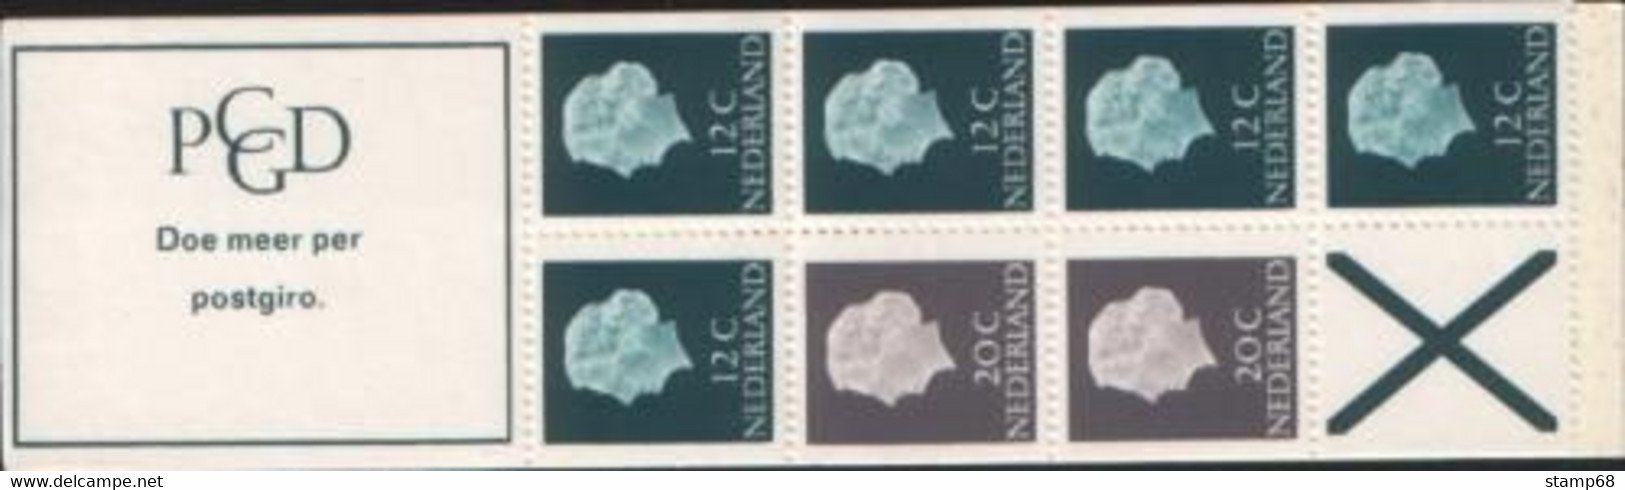 Nederland NVPH PB7bF Postzegelboekje 1968 MNH Postfris - Markenheftchen Und Rollen